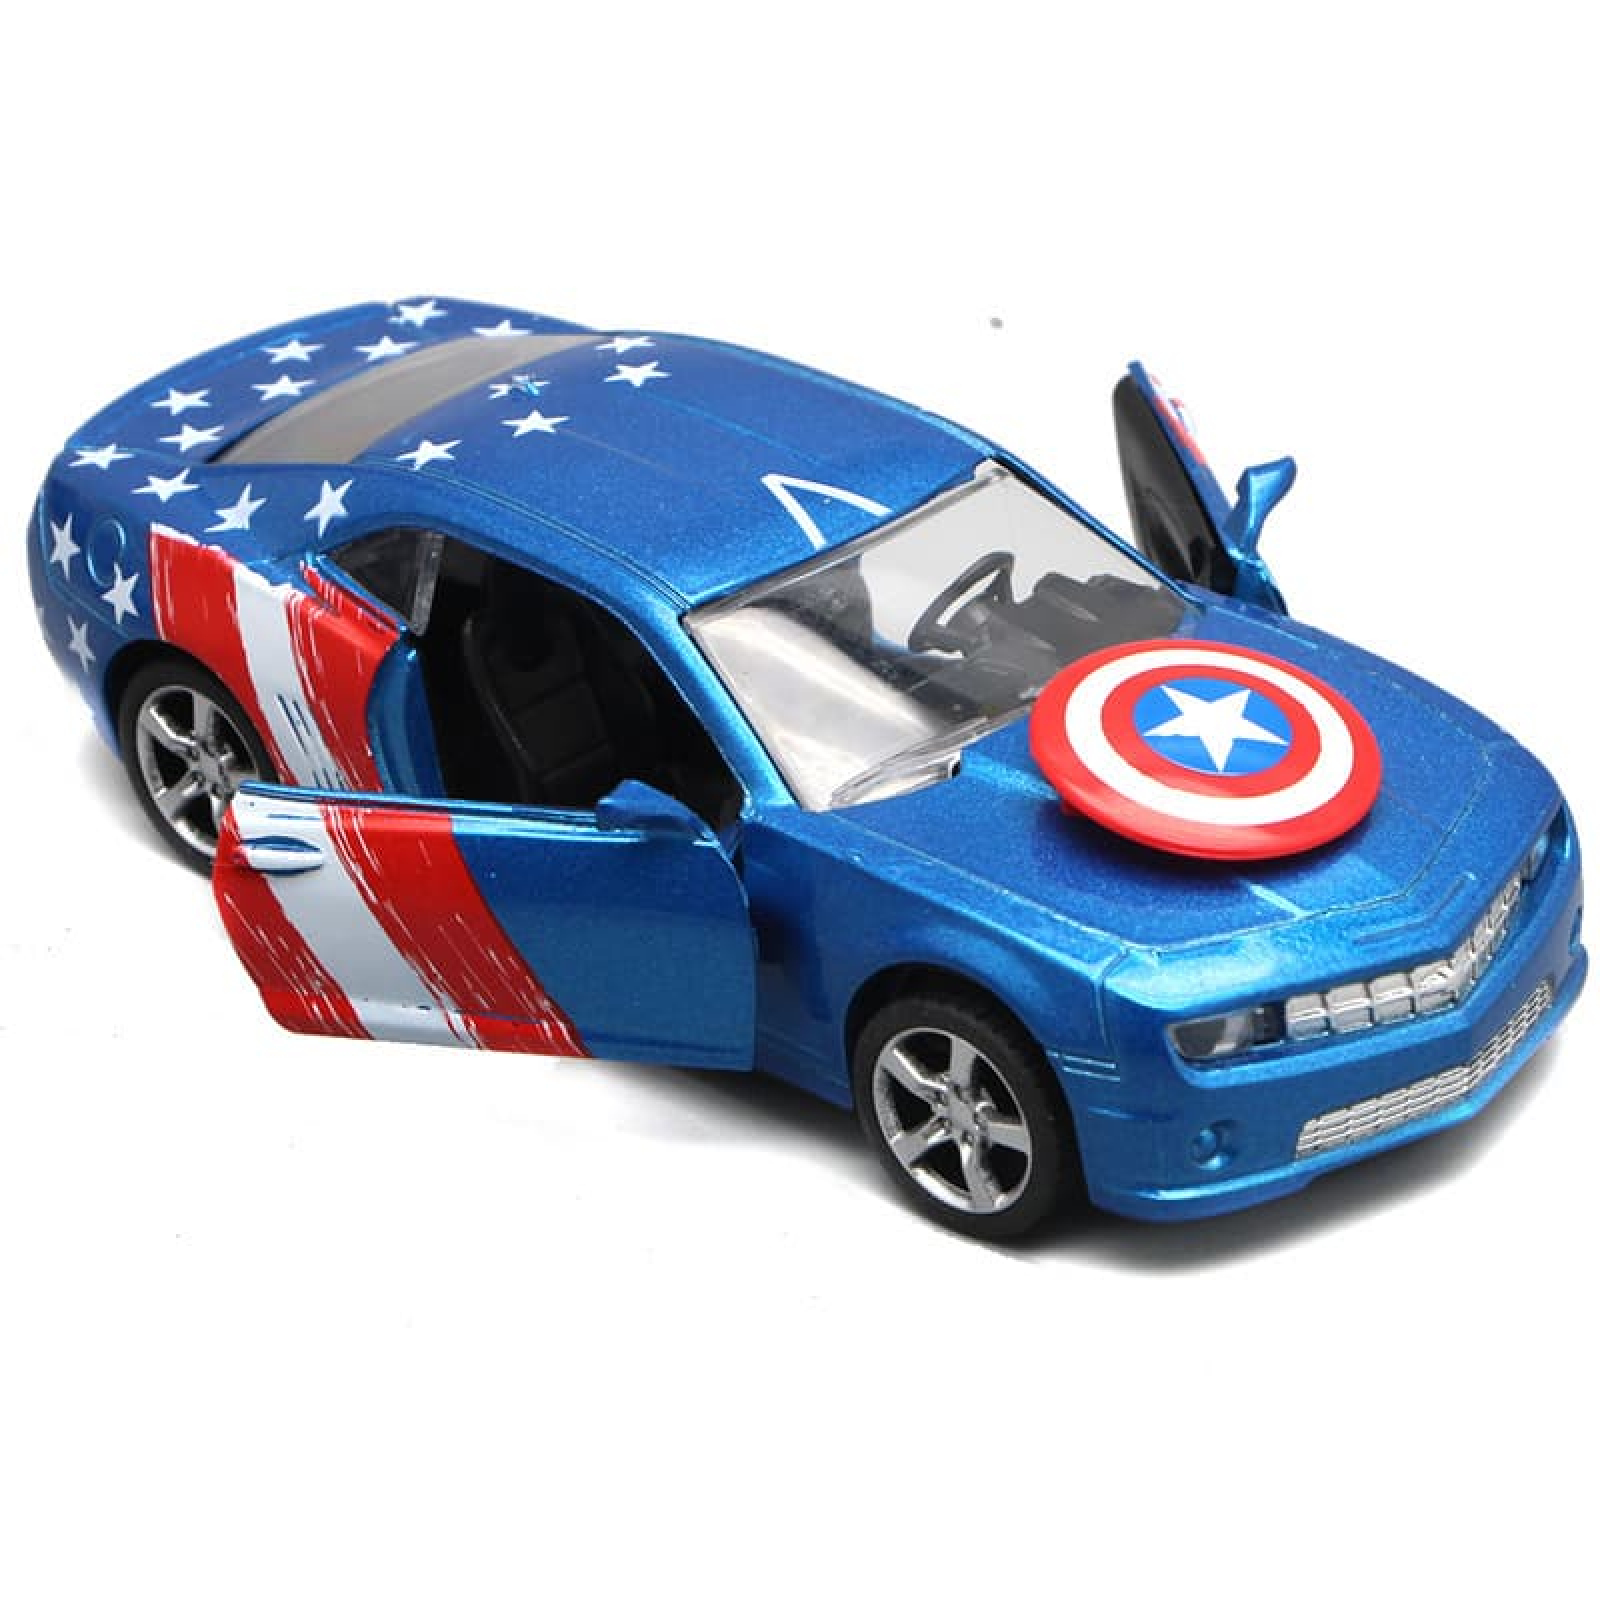 Siêu xe Marvel - Captain America mô hình đồ chơi đẹp 016